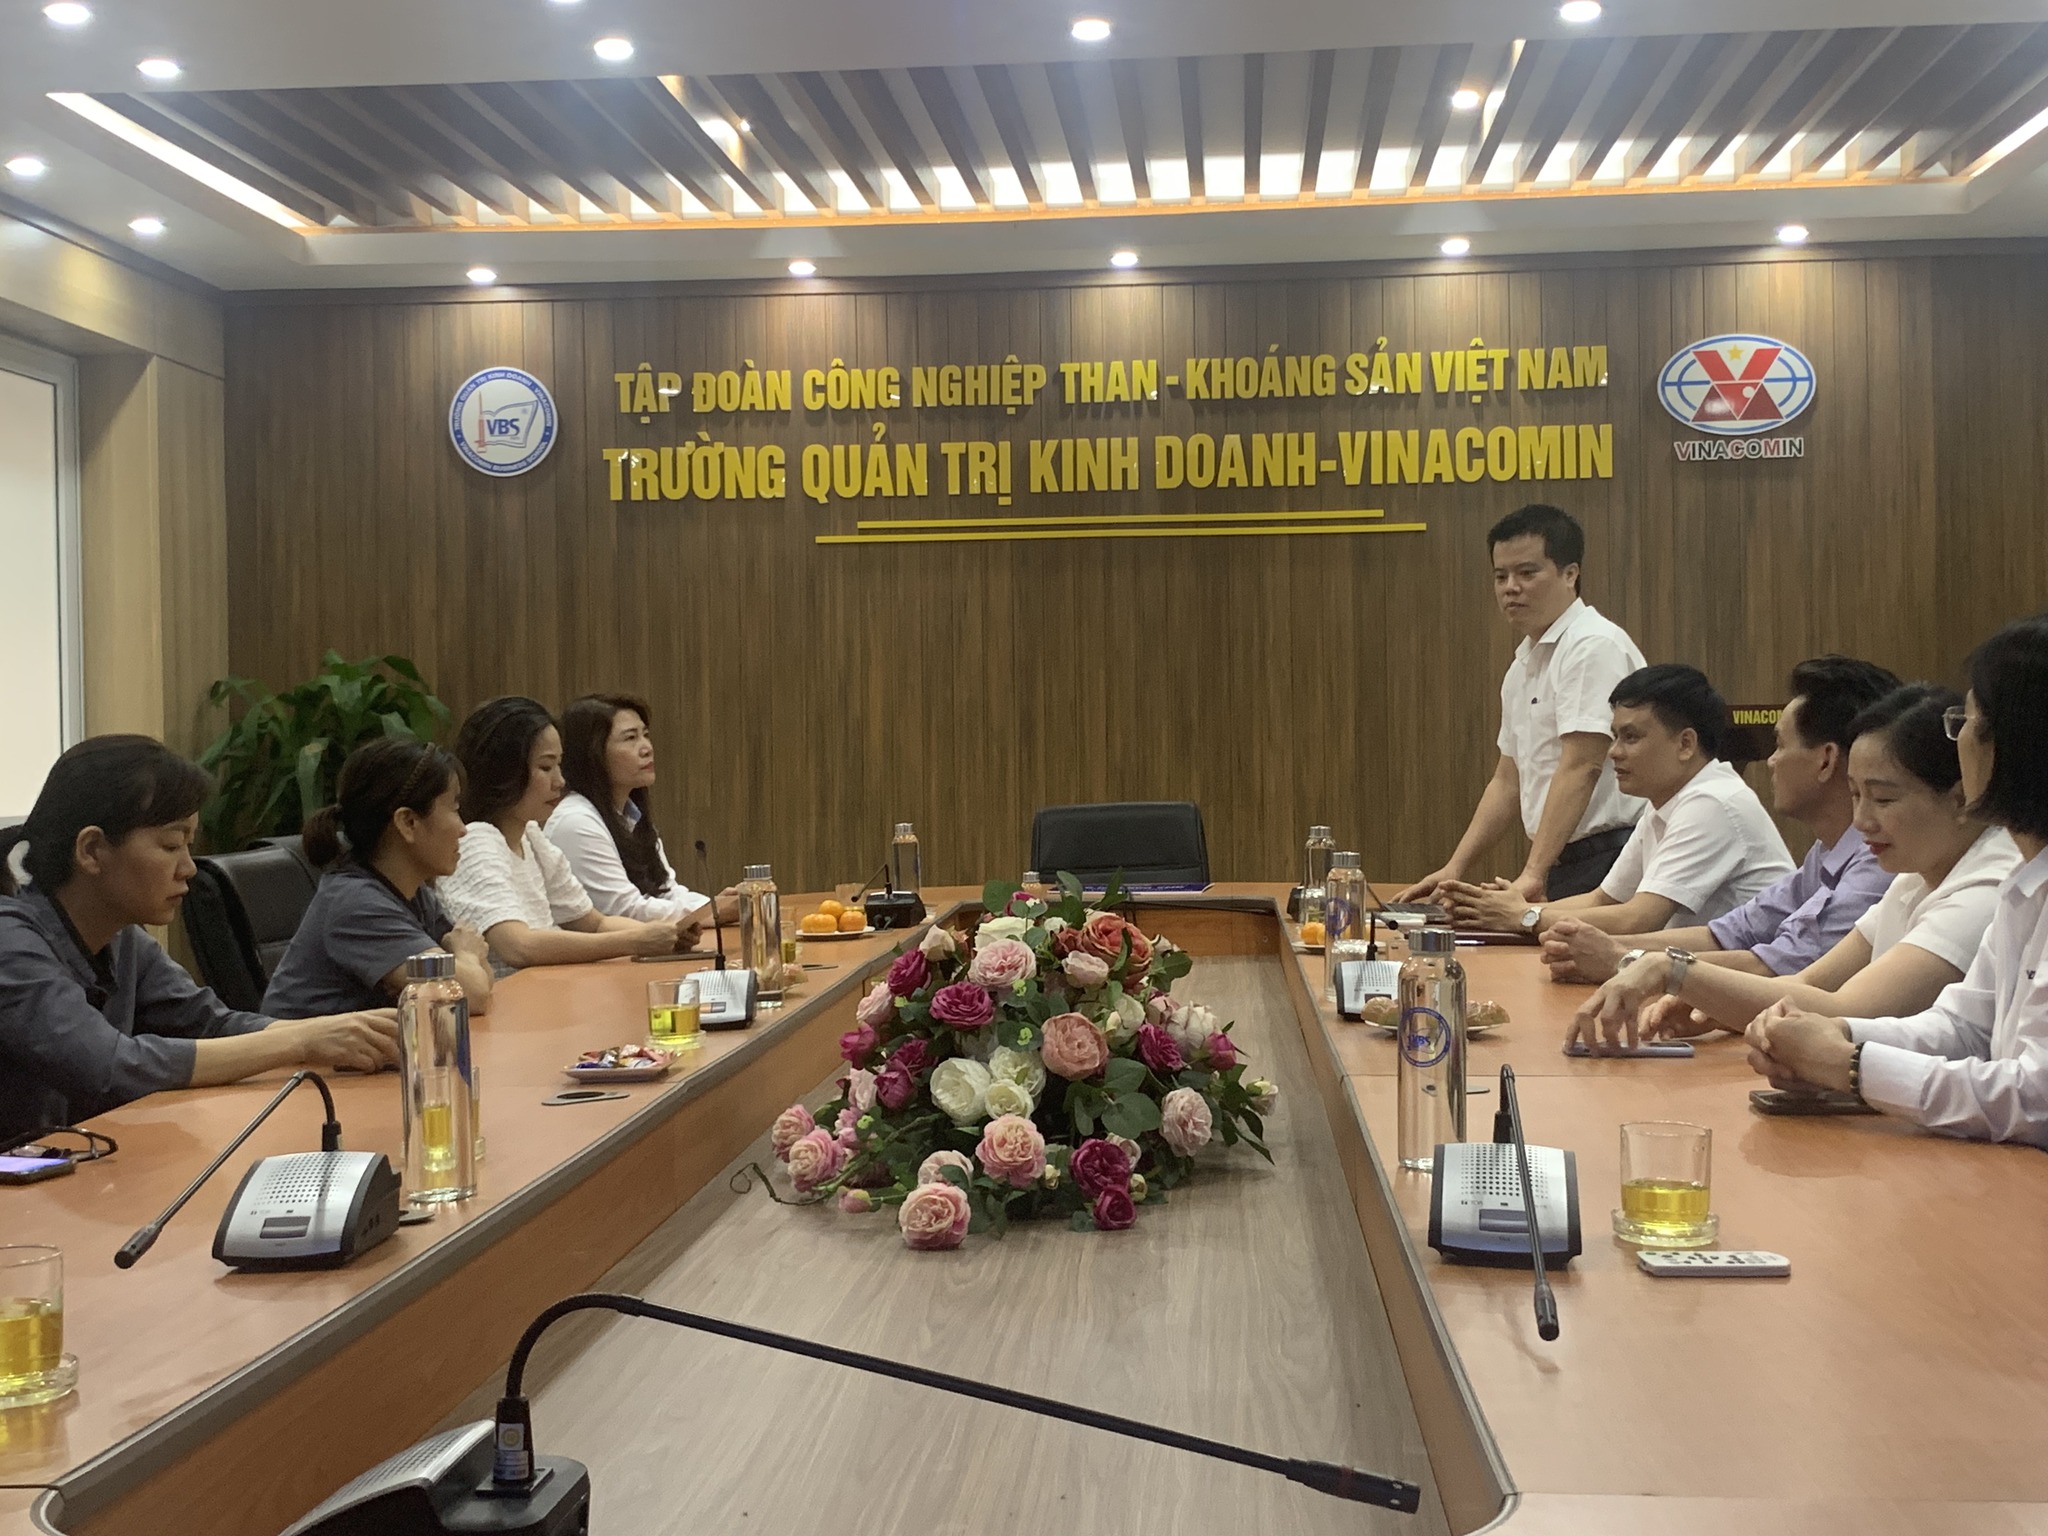 Đ/c Nguyễn Việt Dũng thay mặt Nhà trường báo cáo với Công đoàn TKV